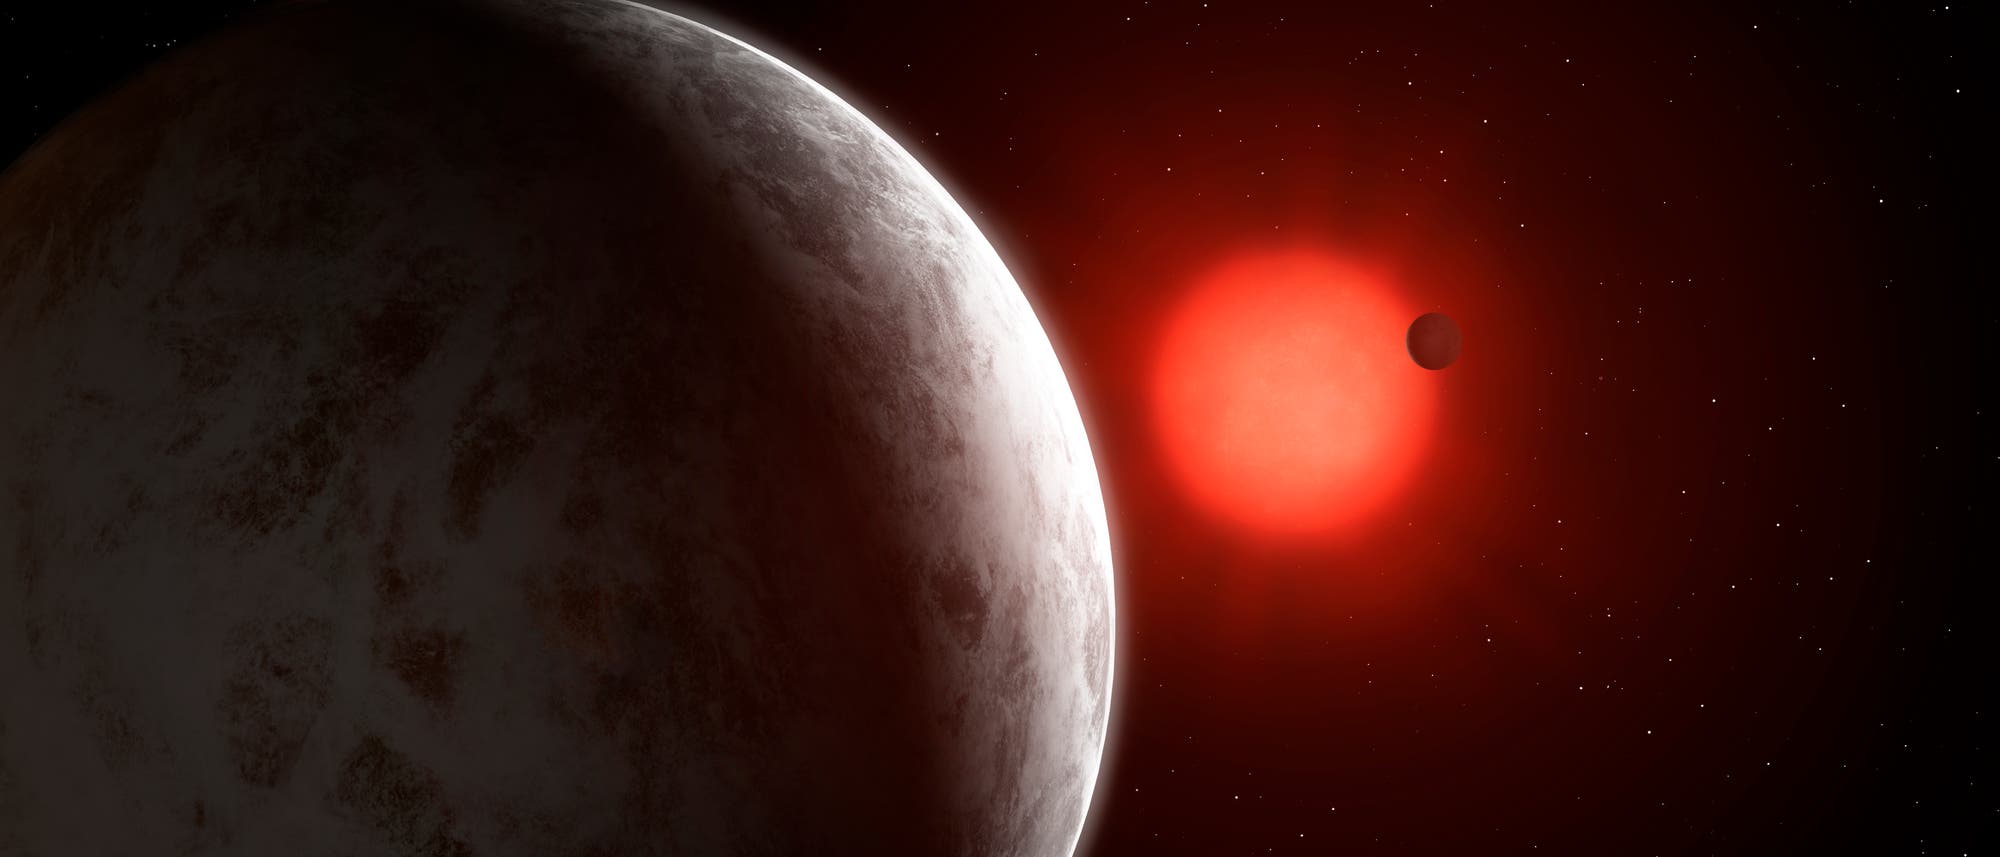 Zwei - oder womöglich drei - Planeten kreisen um Gliese 887 (künstlerische Darstellung)